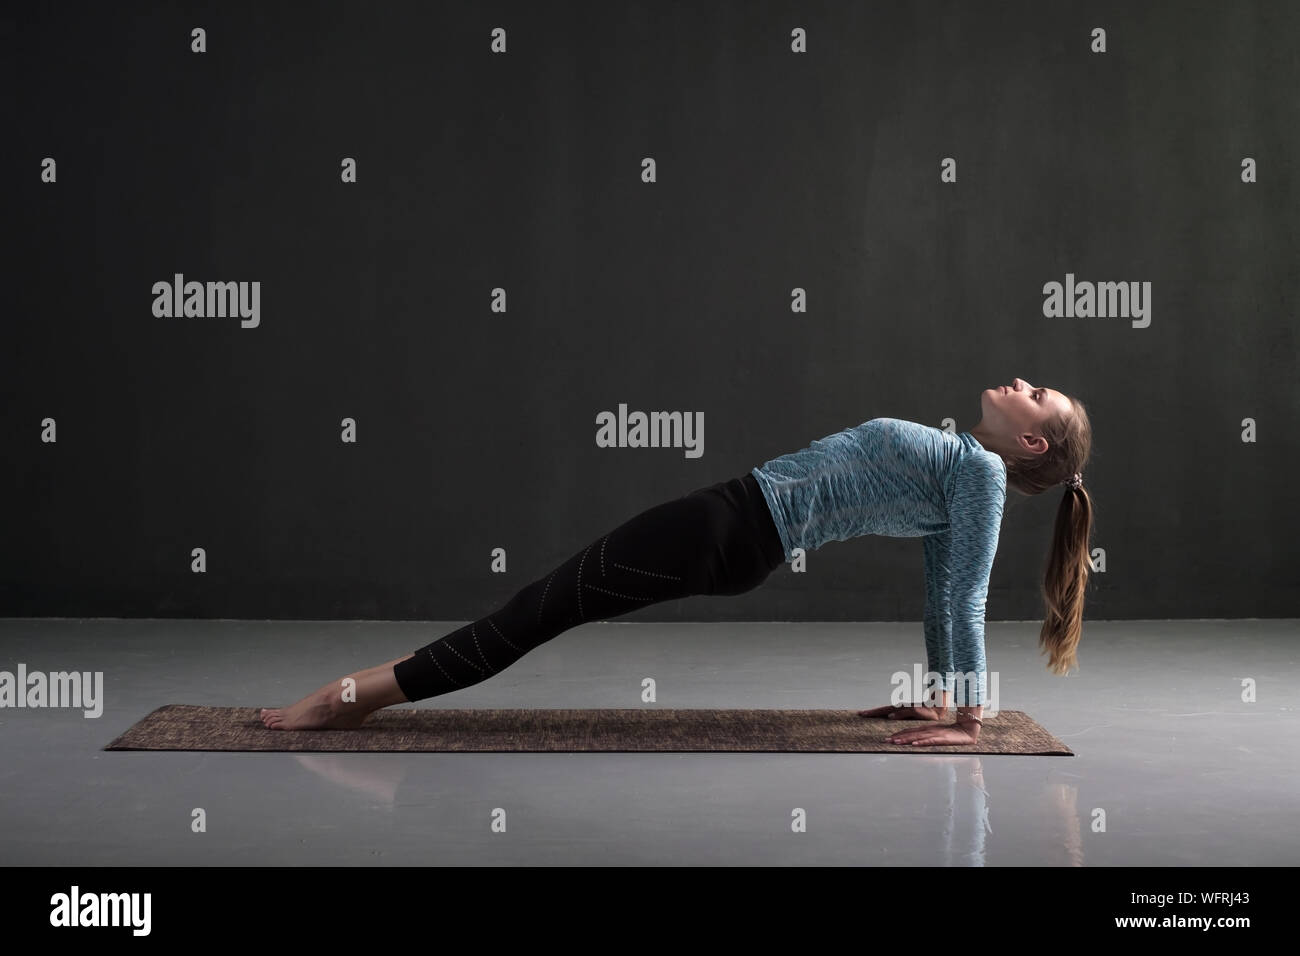 Woman practices yoga asana purvottanasana or upward facing plank full pose isolated on black background Stock Photo